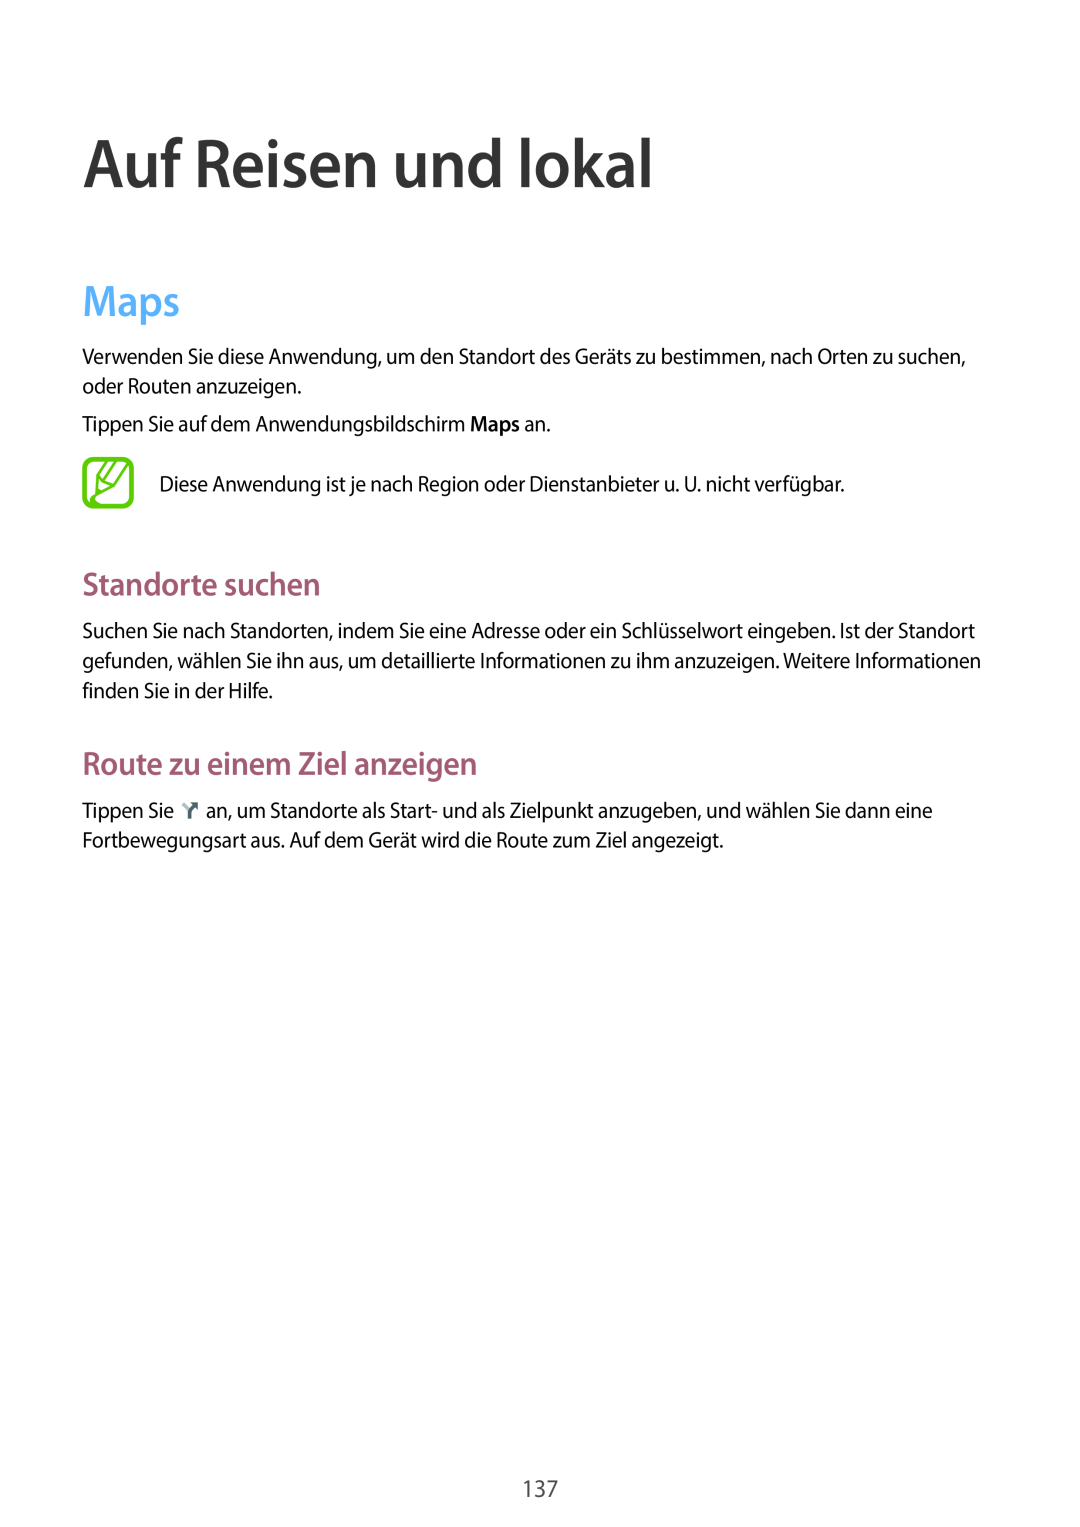 Samsung SM-N9005ZWEMEO, SM-N9005ZKEXEO manual Auf Reisen und lokal, Maps, Standorte suchen, Route zu einem Ziel anzeigen 